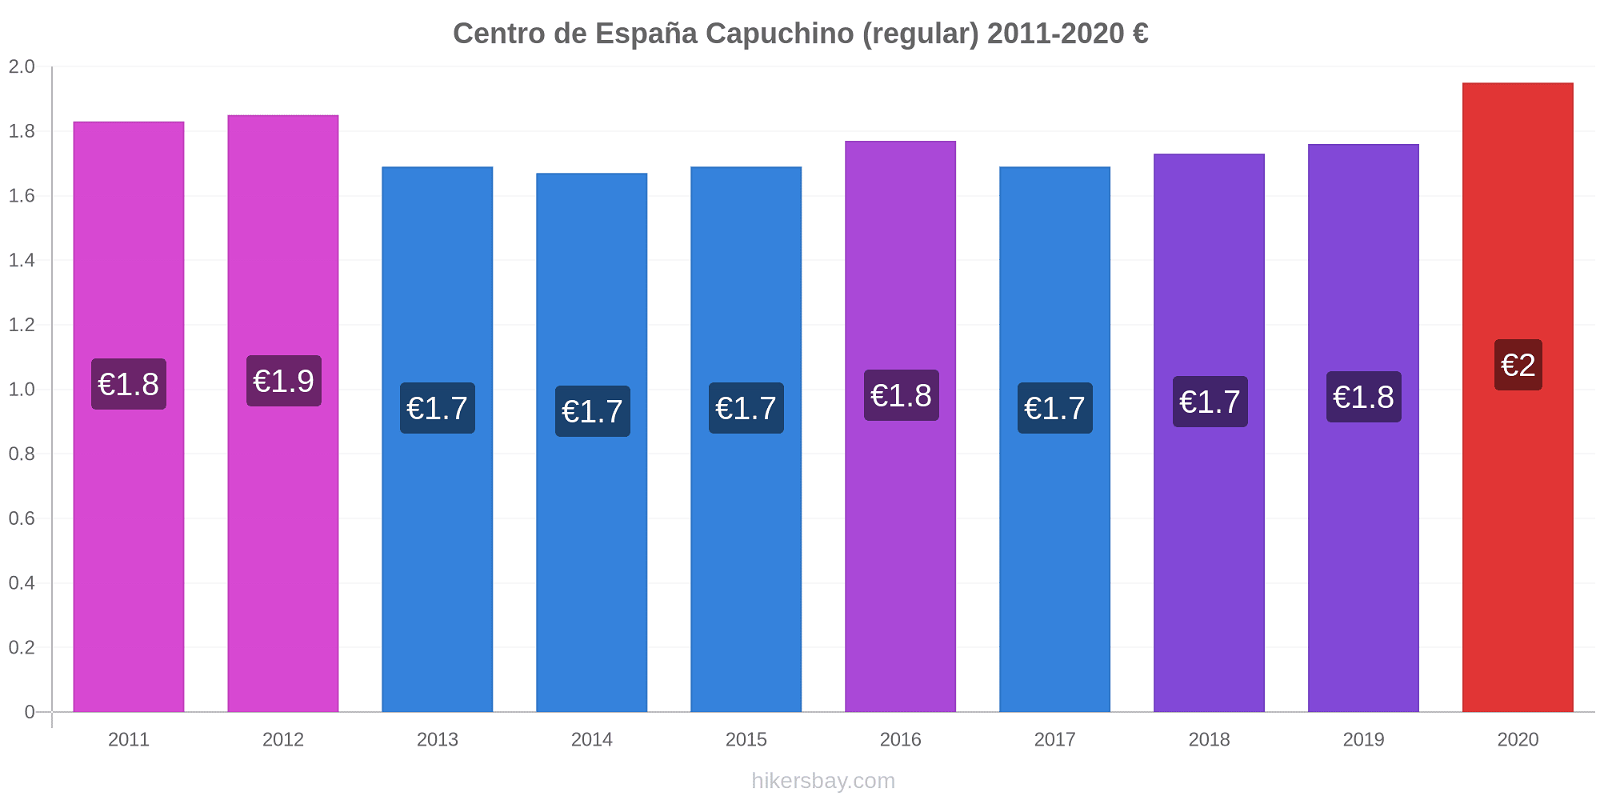 Centro de España cambios de precios Capuchino (regular) hikersbay.com